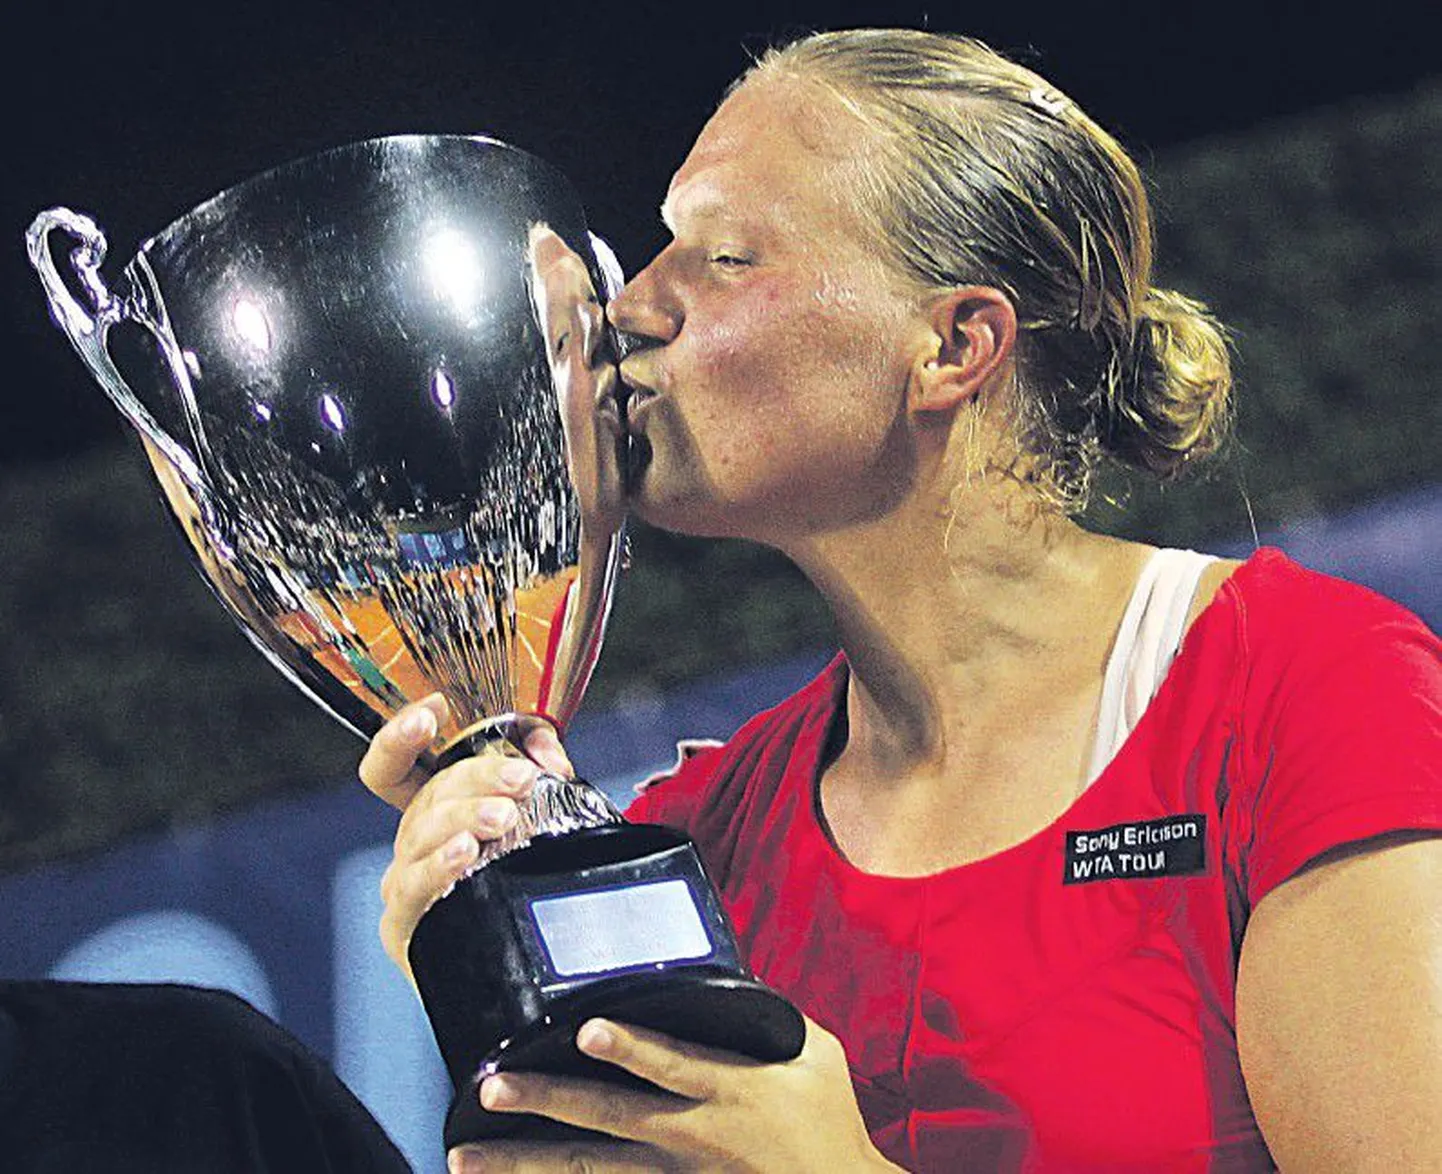 «Это лучший момент в моей карьере», — сказала Кайа Канепи после победы в турнире WTA.